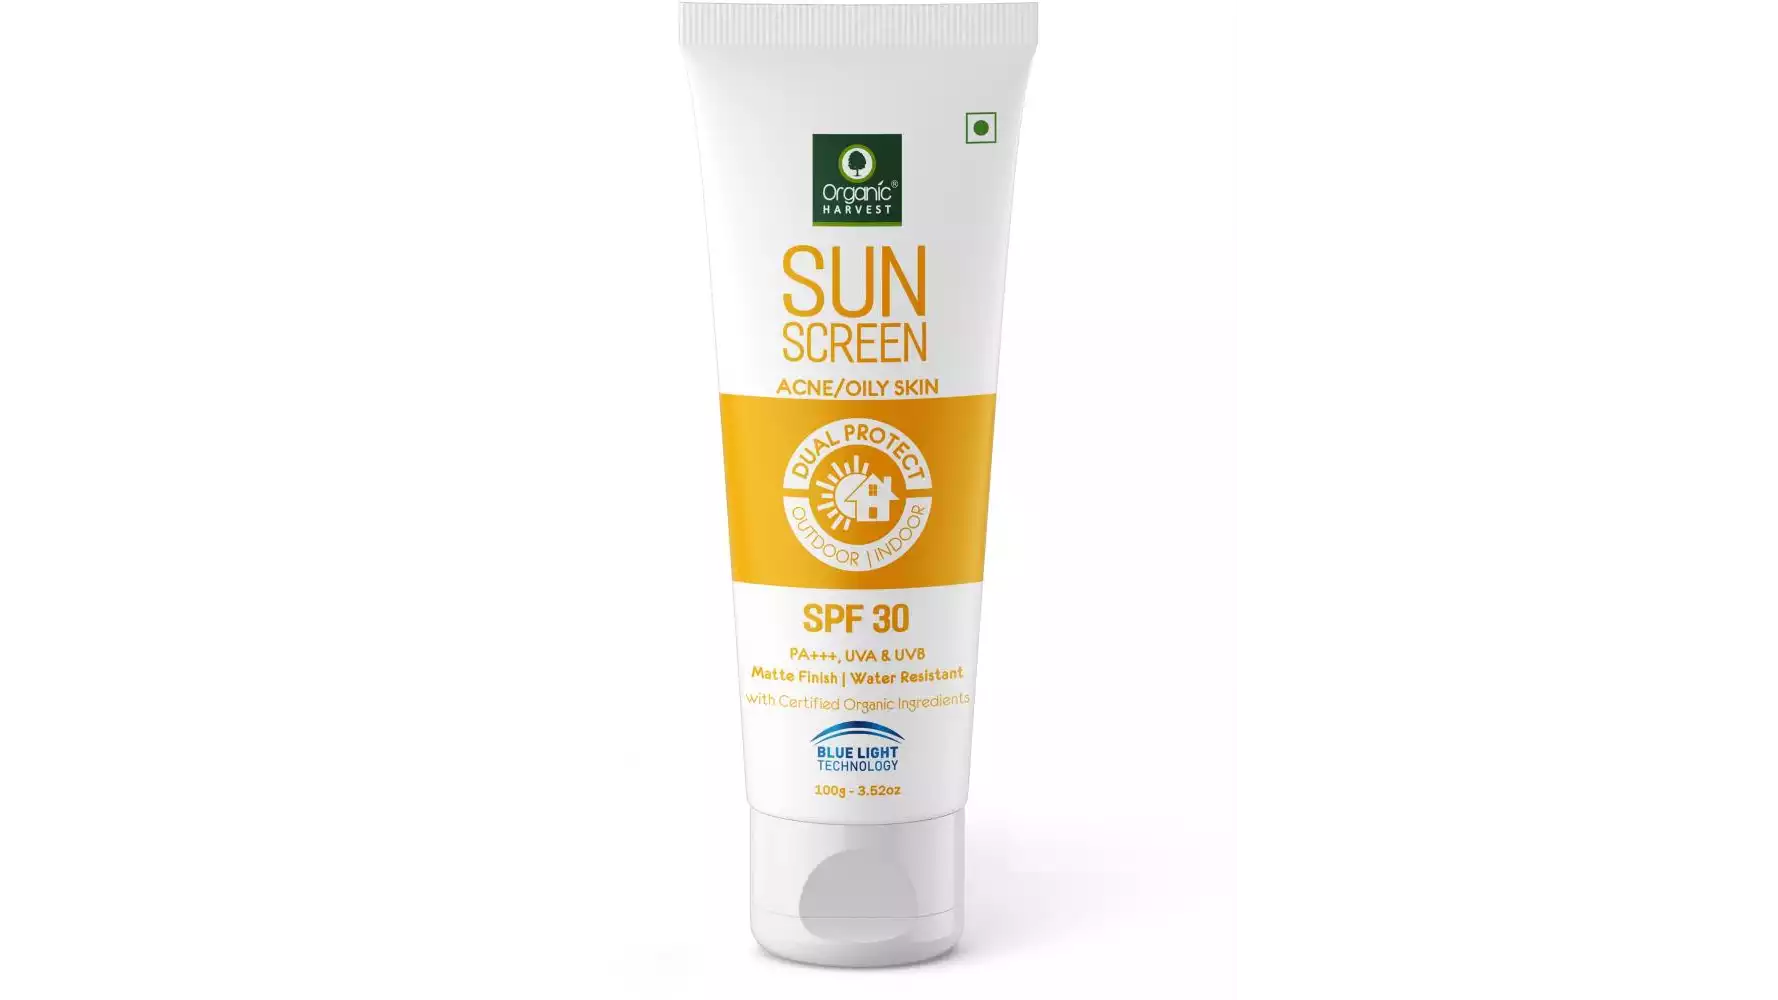 Organic Harvest Sunscreen For Acne & Oily Skin SPF 30 (100g)